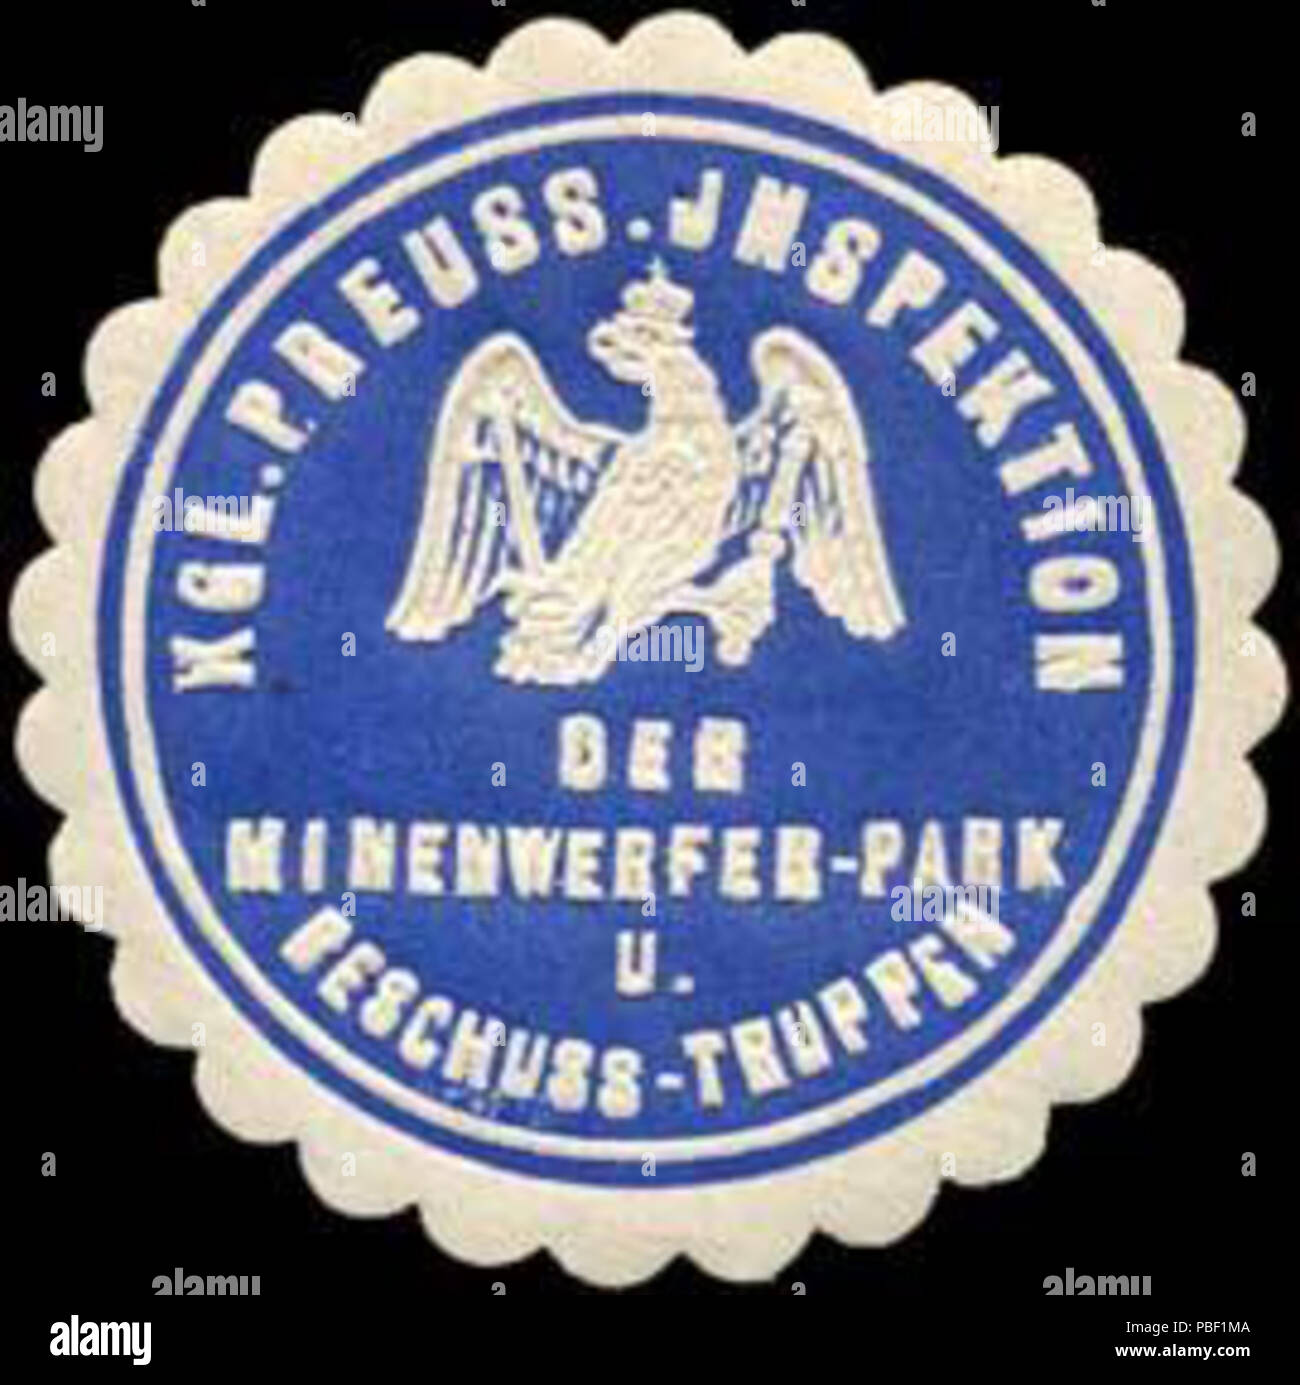 Alte Briefverschlussmarke aus Papier, welche seit ca. 1850 von Behoerden, Anwaelten, Notaren und Firmen zum verschliessen der Post verwendet wurde. 1453 Siegelmarke Königlich Preussische Inspektion der Minenwerfer - Parco und Beschuss - Truppen W0238158 Foto Stock